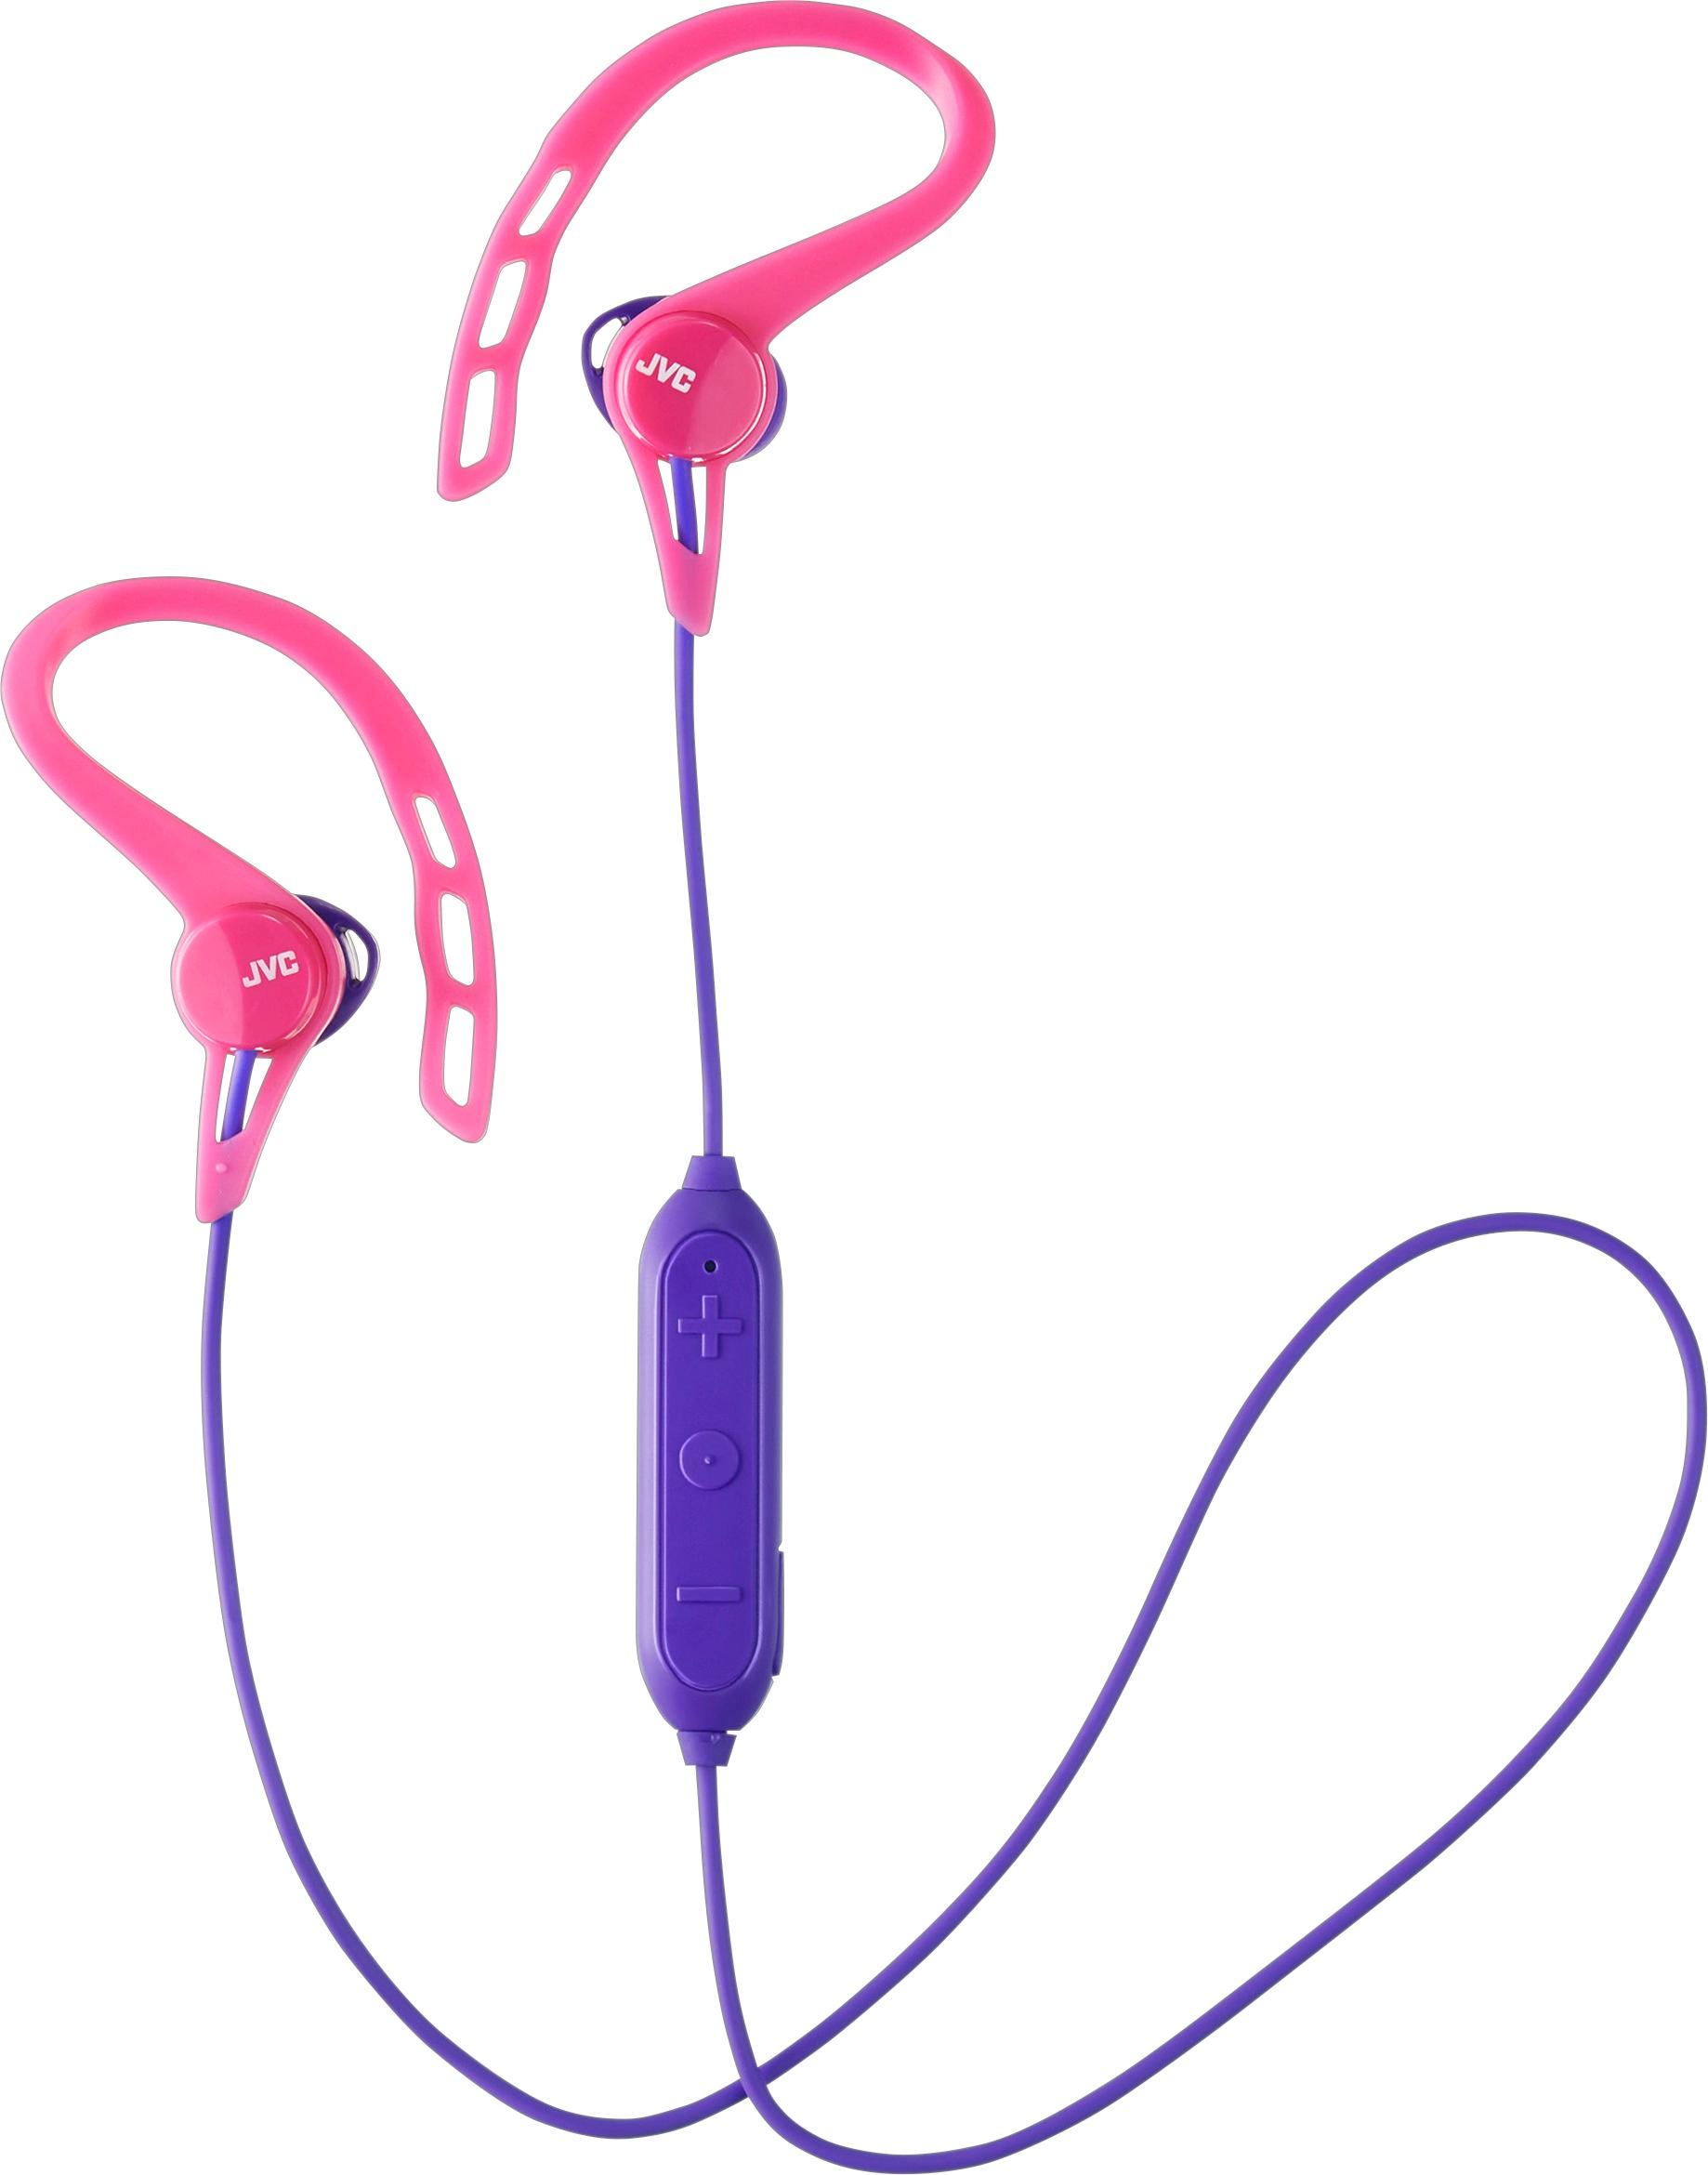 JVC - HA EC20BT Wireless In-Ear Headphones (iOS) - Pink was $39.99 now $25.99 (35.0% off)